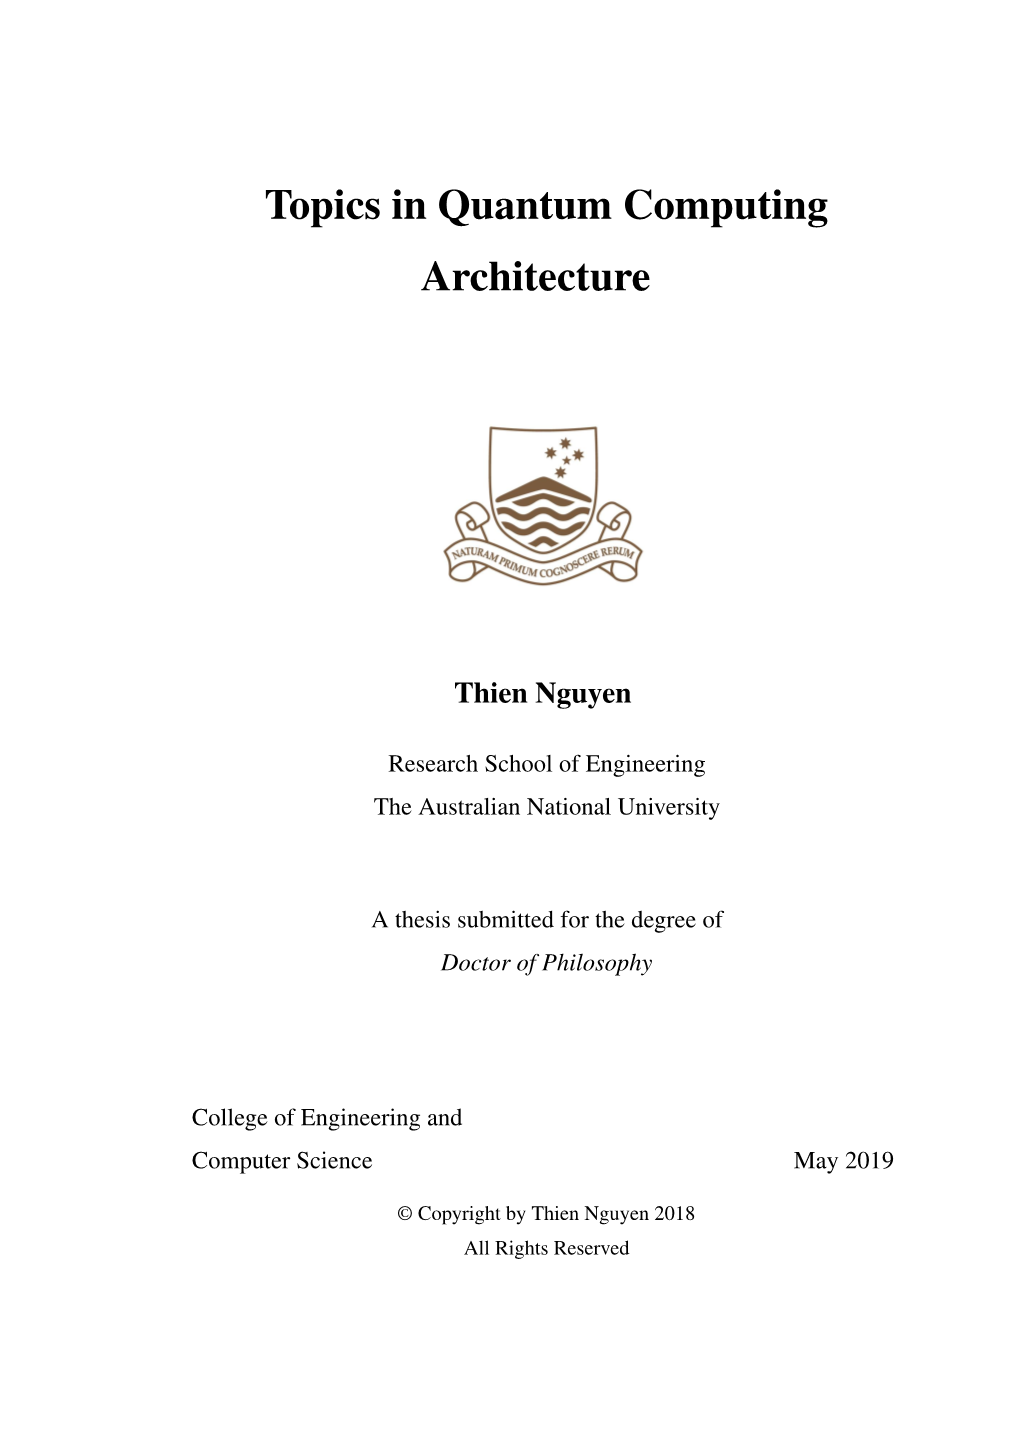 Topics in Quantum Computing Architecture